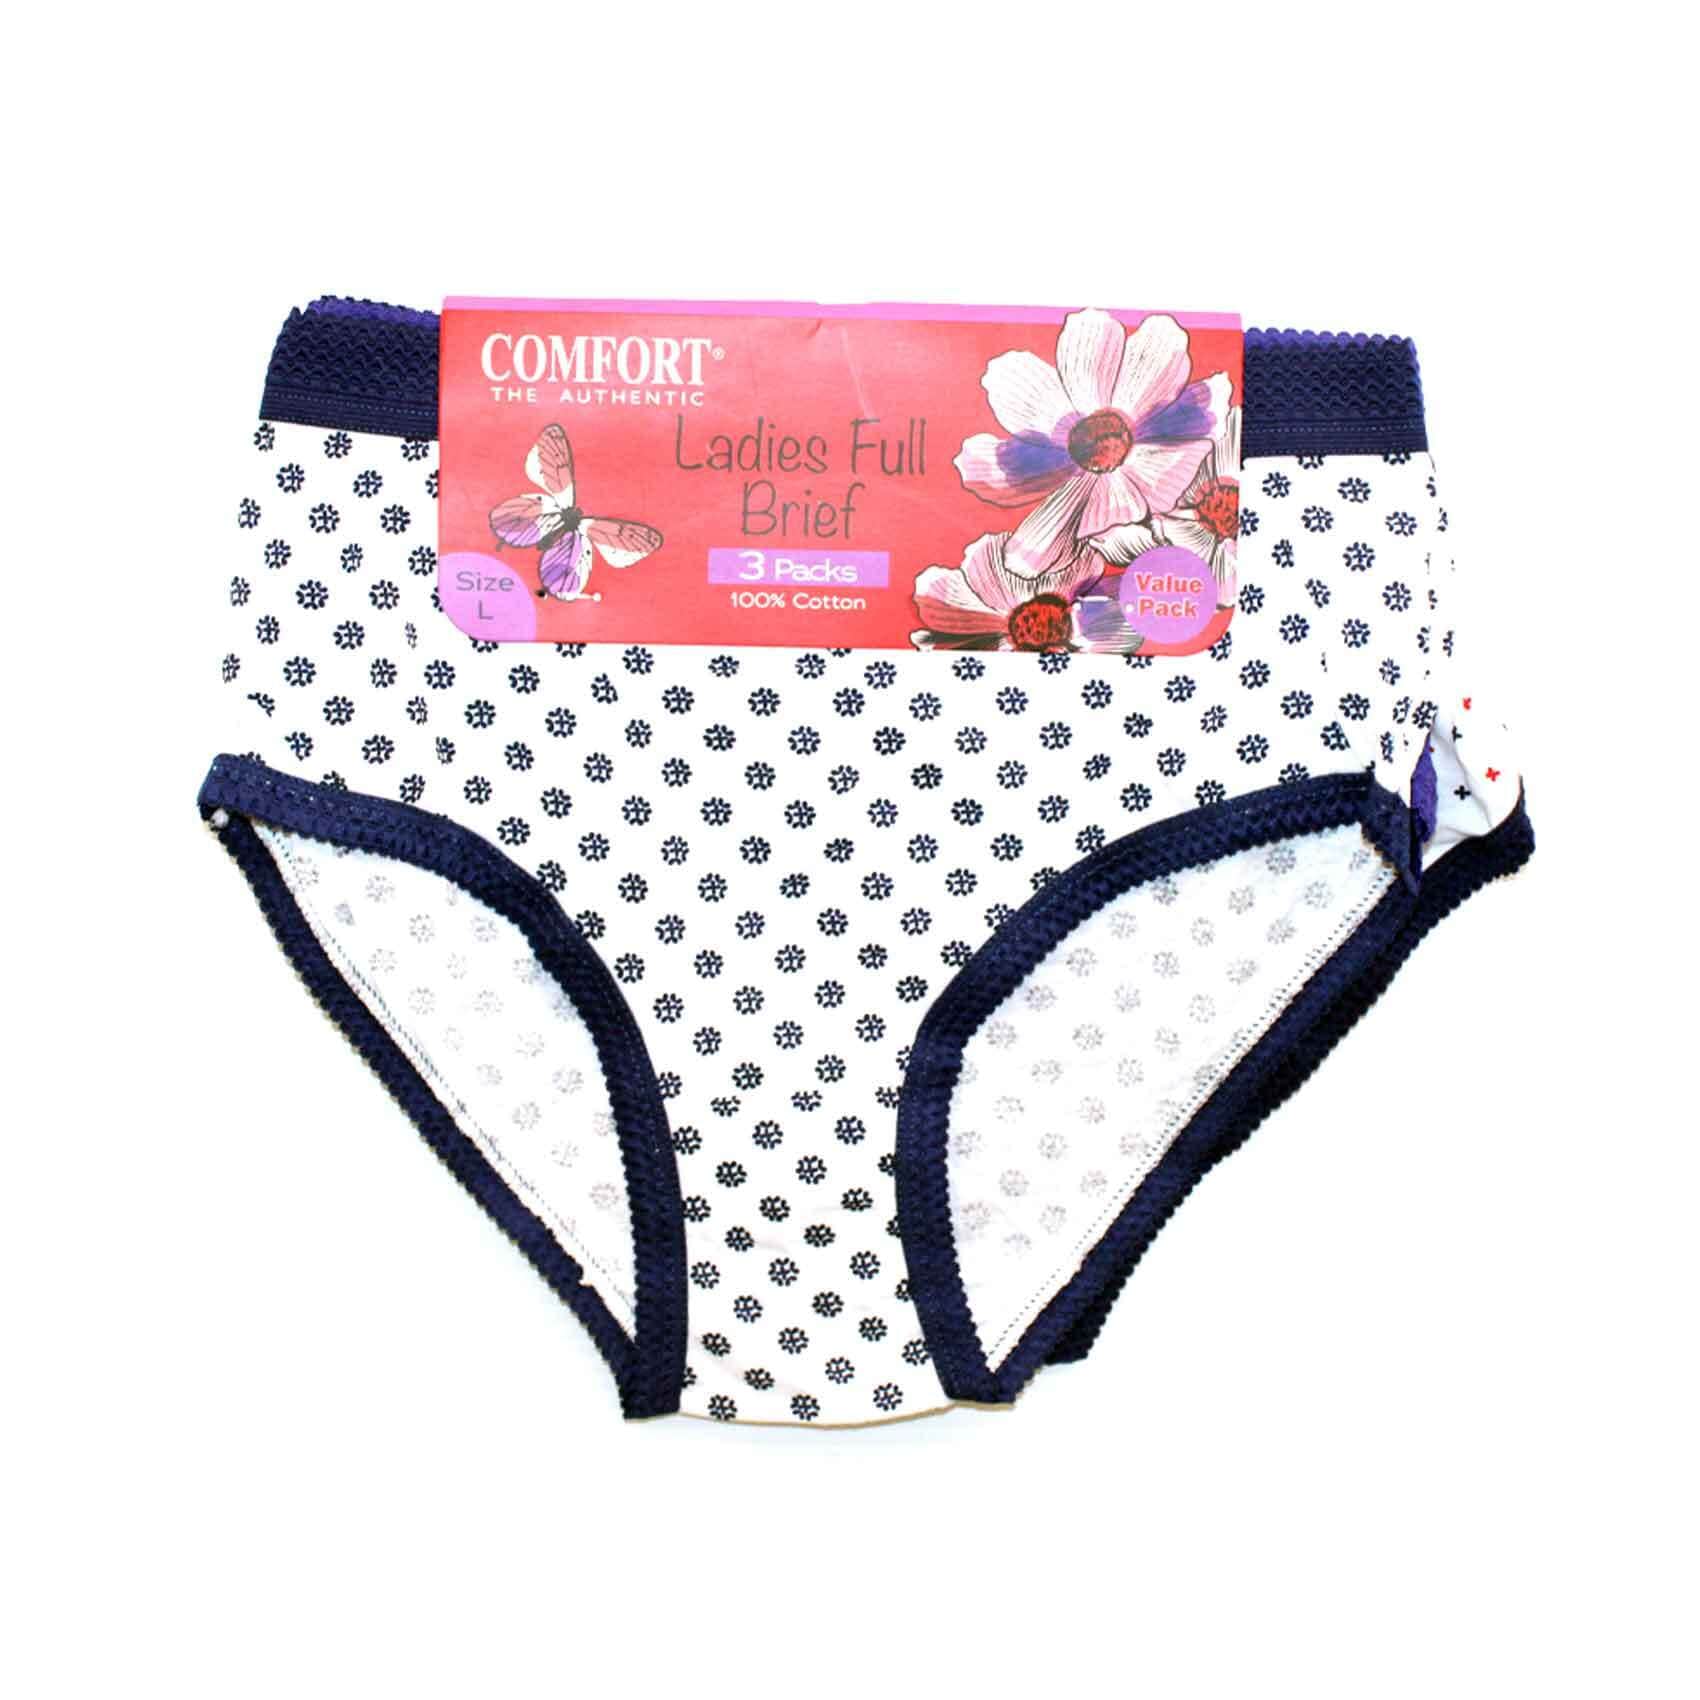 Buy Ladies Underwear Online - Shop on Carrefour Qatar